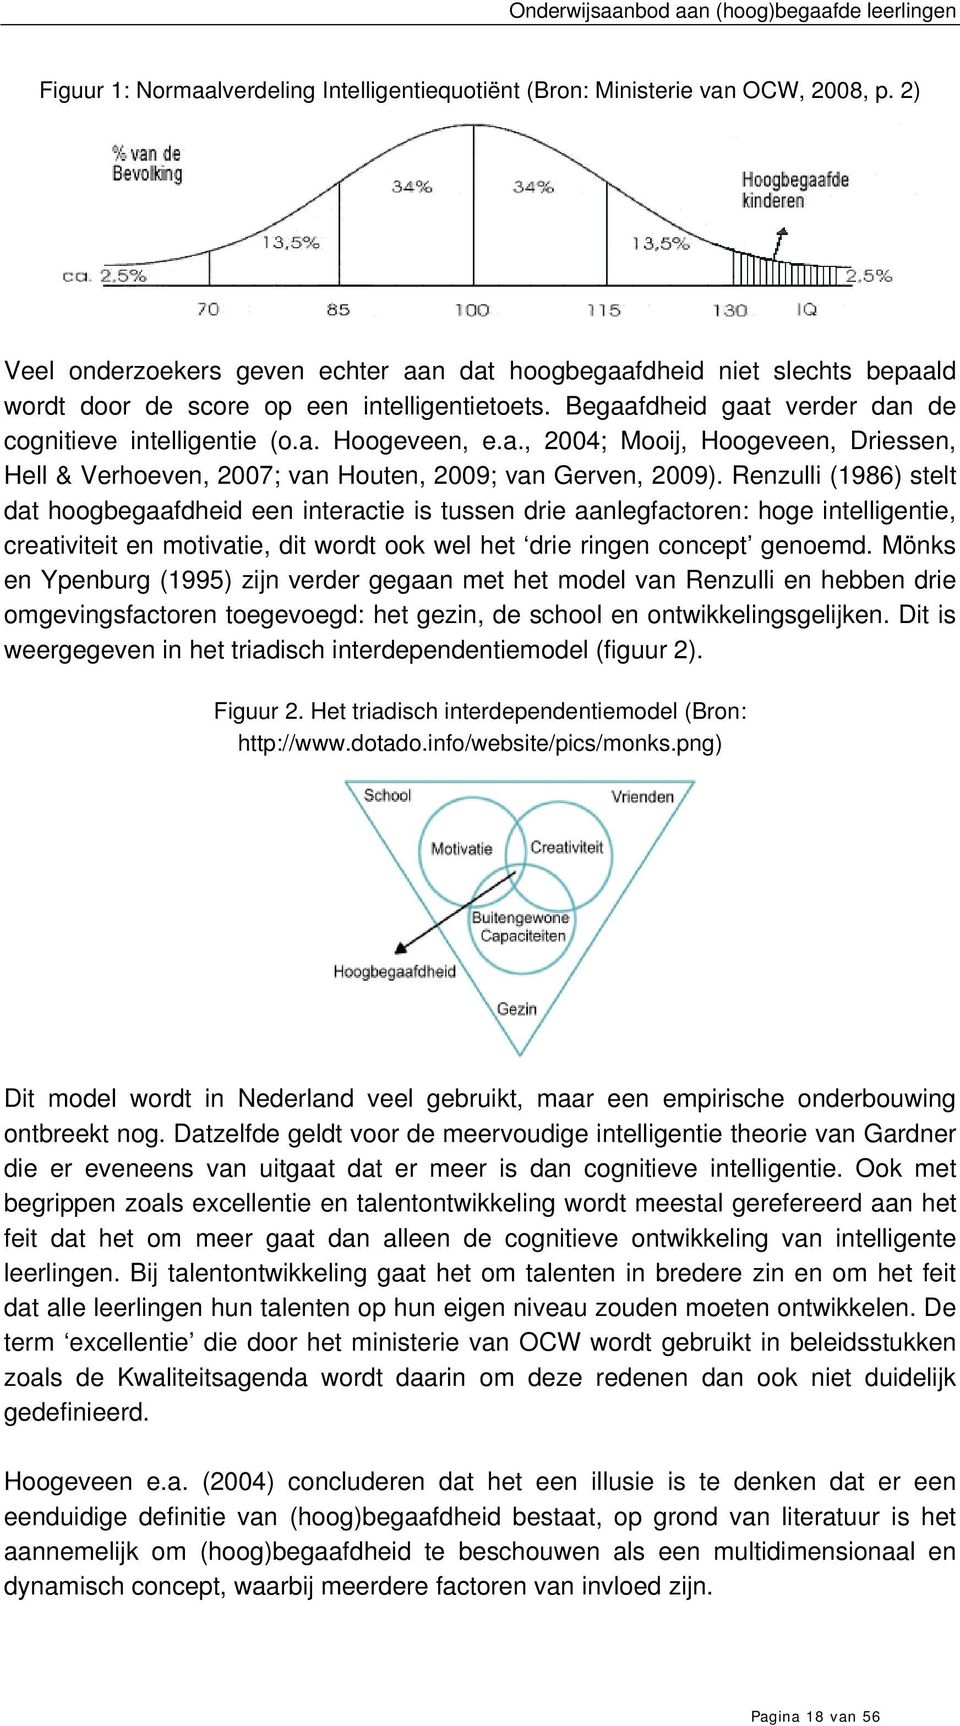 a., 2004; Mooij, Hoogeveen, Driessen, Hell & Verhoeven, 2007; van Houten, 2009; van Gerven, 2009).